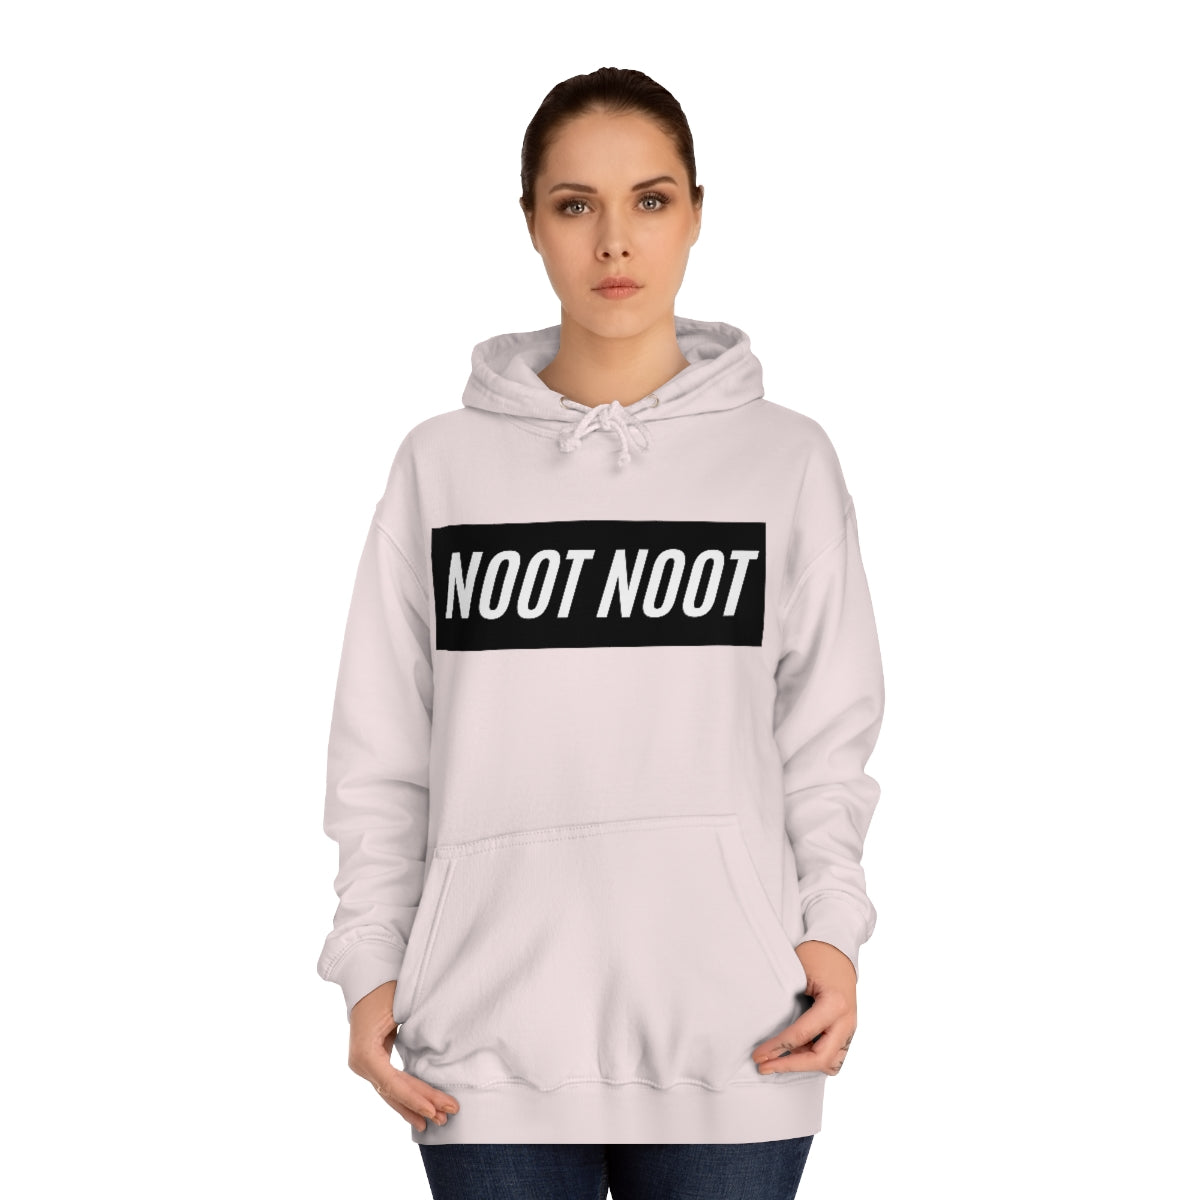 Unisex College Hoodie - NOOT NOOT